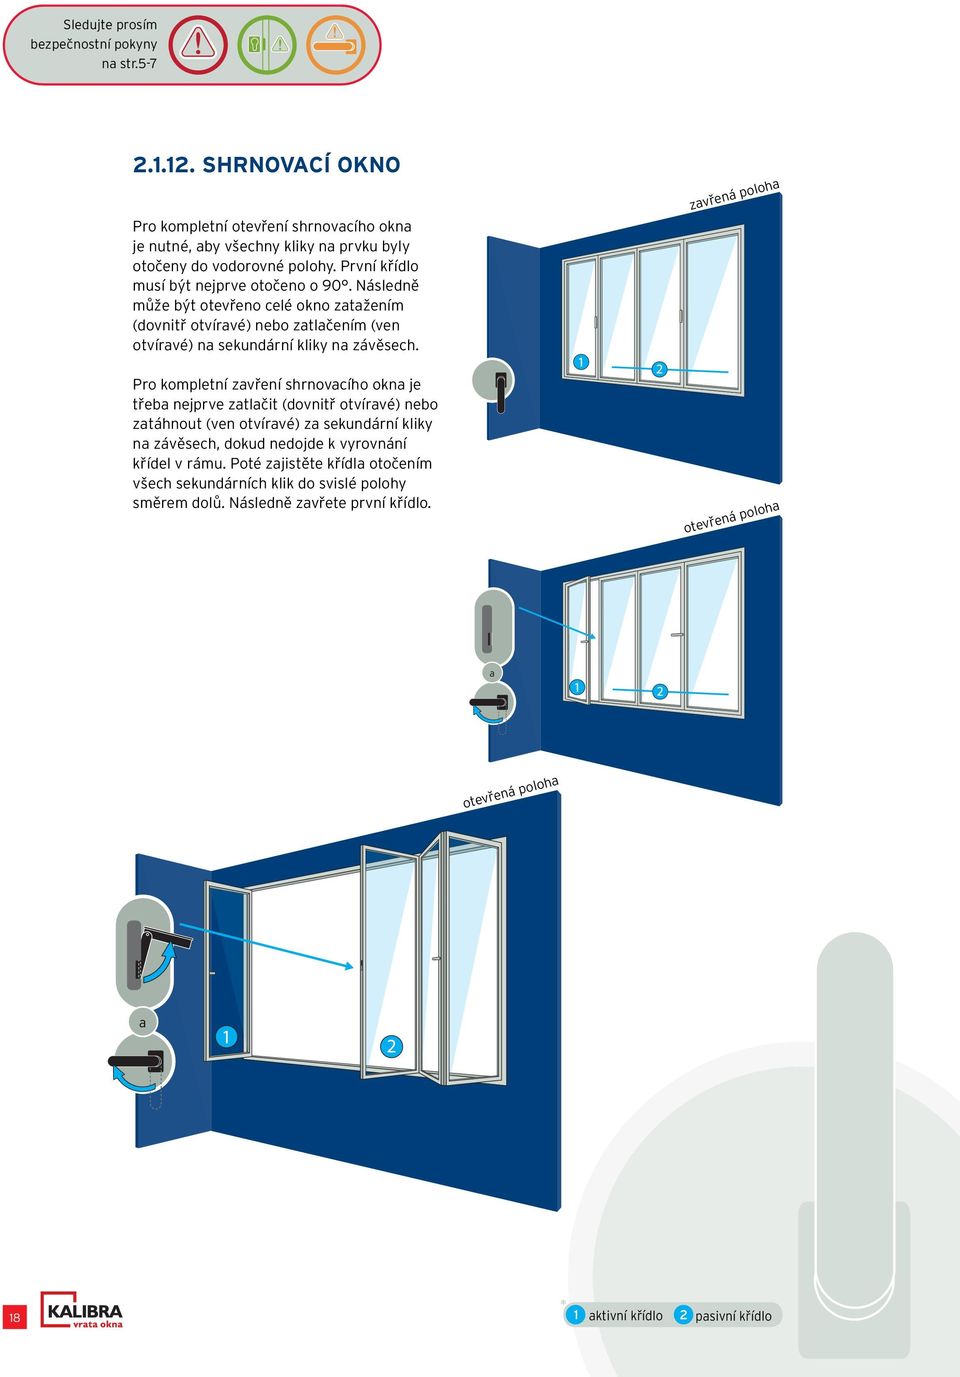 Následně může být otevřeno celé okno zatažením (dovnitř otvíravé) nebo zatlačením (ven otvíravé) na sekundární kliky na závěsech.